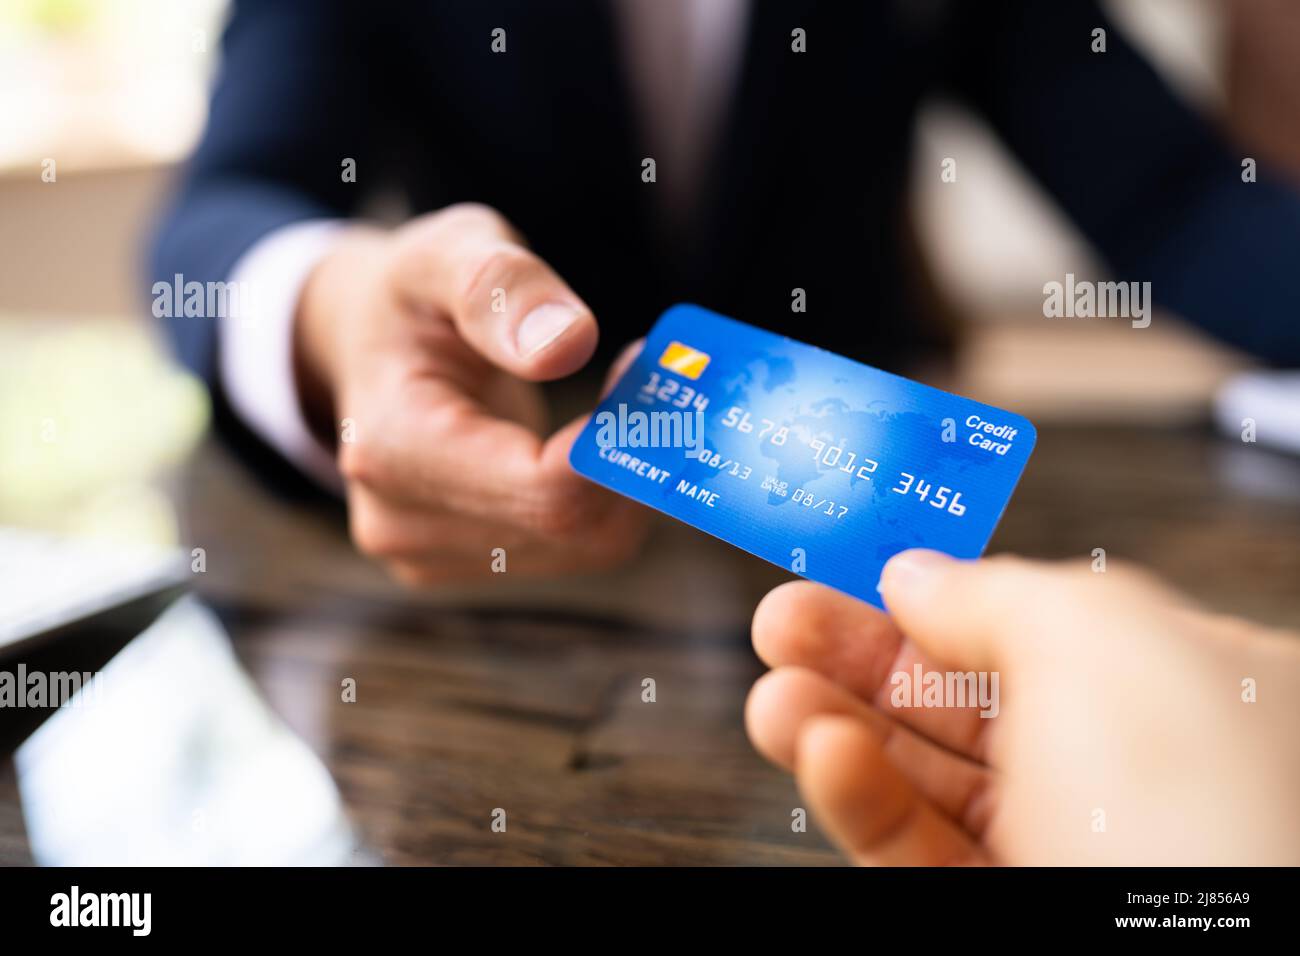 Transaction commerciale par carte de crédit. Homme tenant la carte de débit Banque D'Images